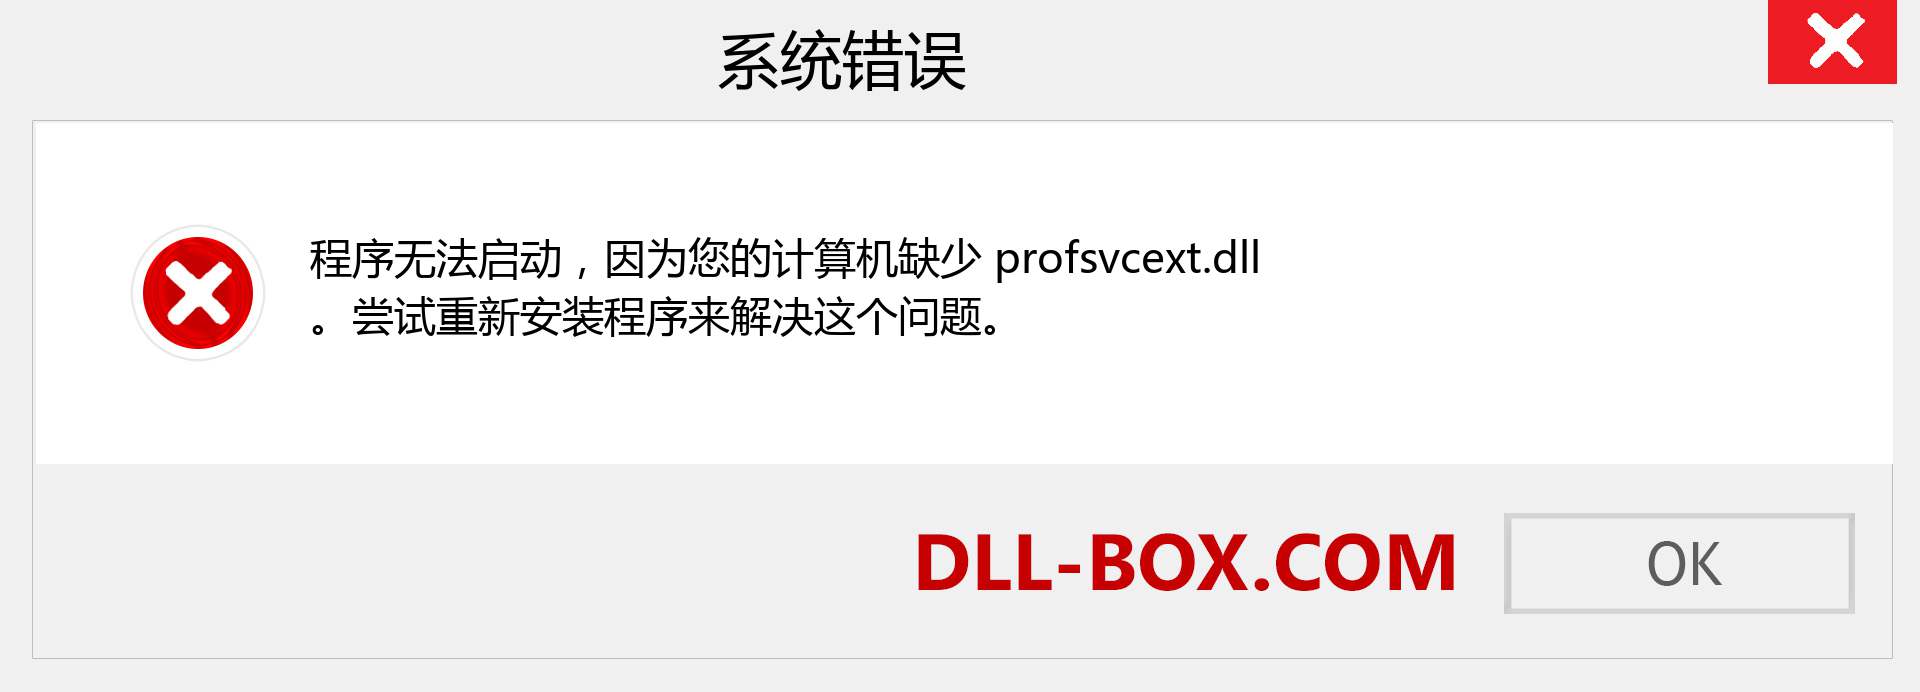 profsvcext.dll 文件丢失？。 适用于 Windows 7、8、10 的下载 - 修复 Windows、照片、图像上的 profsvcext dll 丢失错误